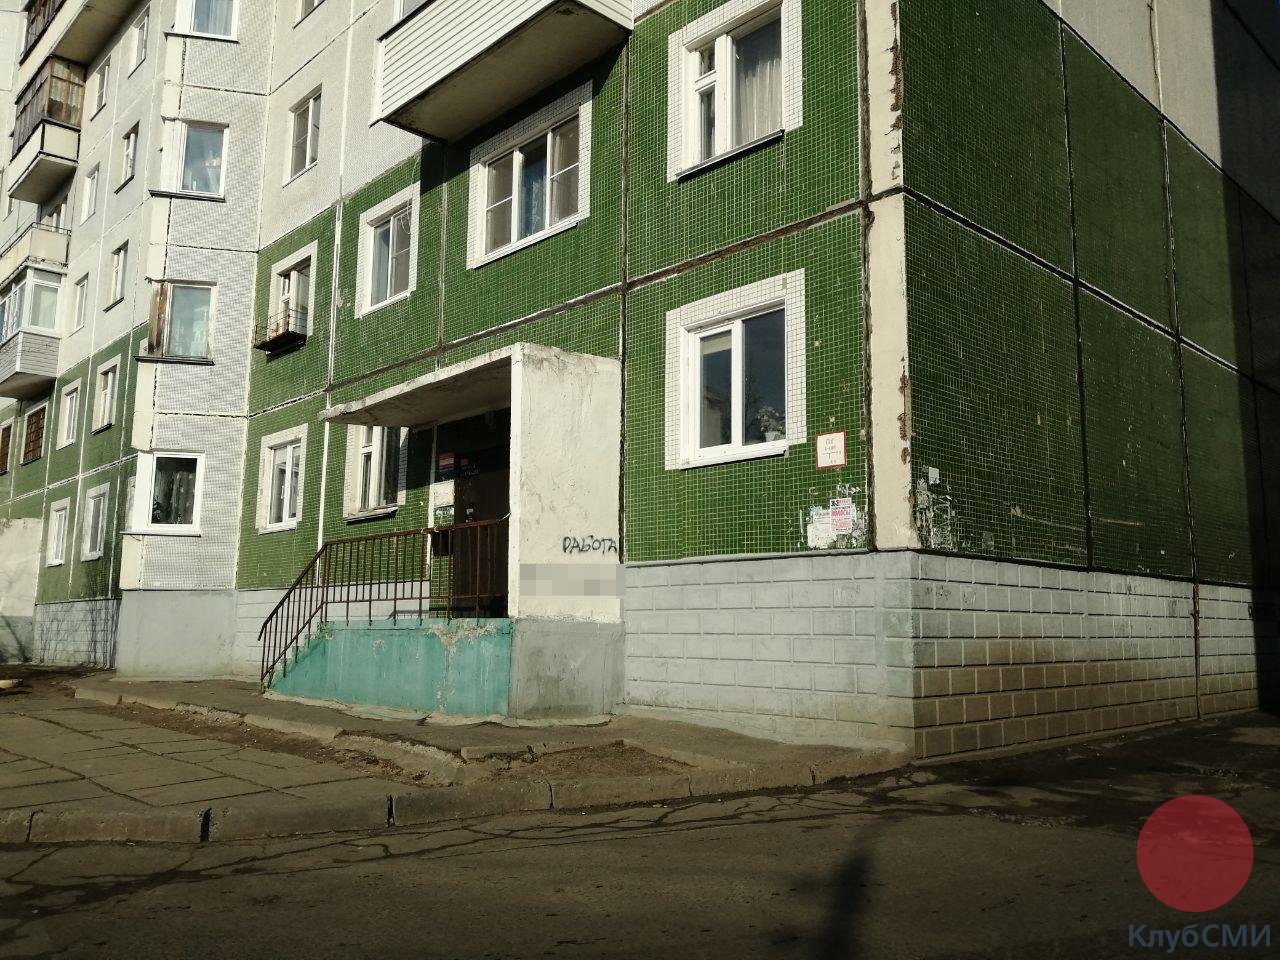 В Северодвинске десятки домов изуродованы предложениями о сомнительной работе